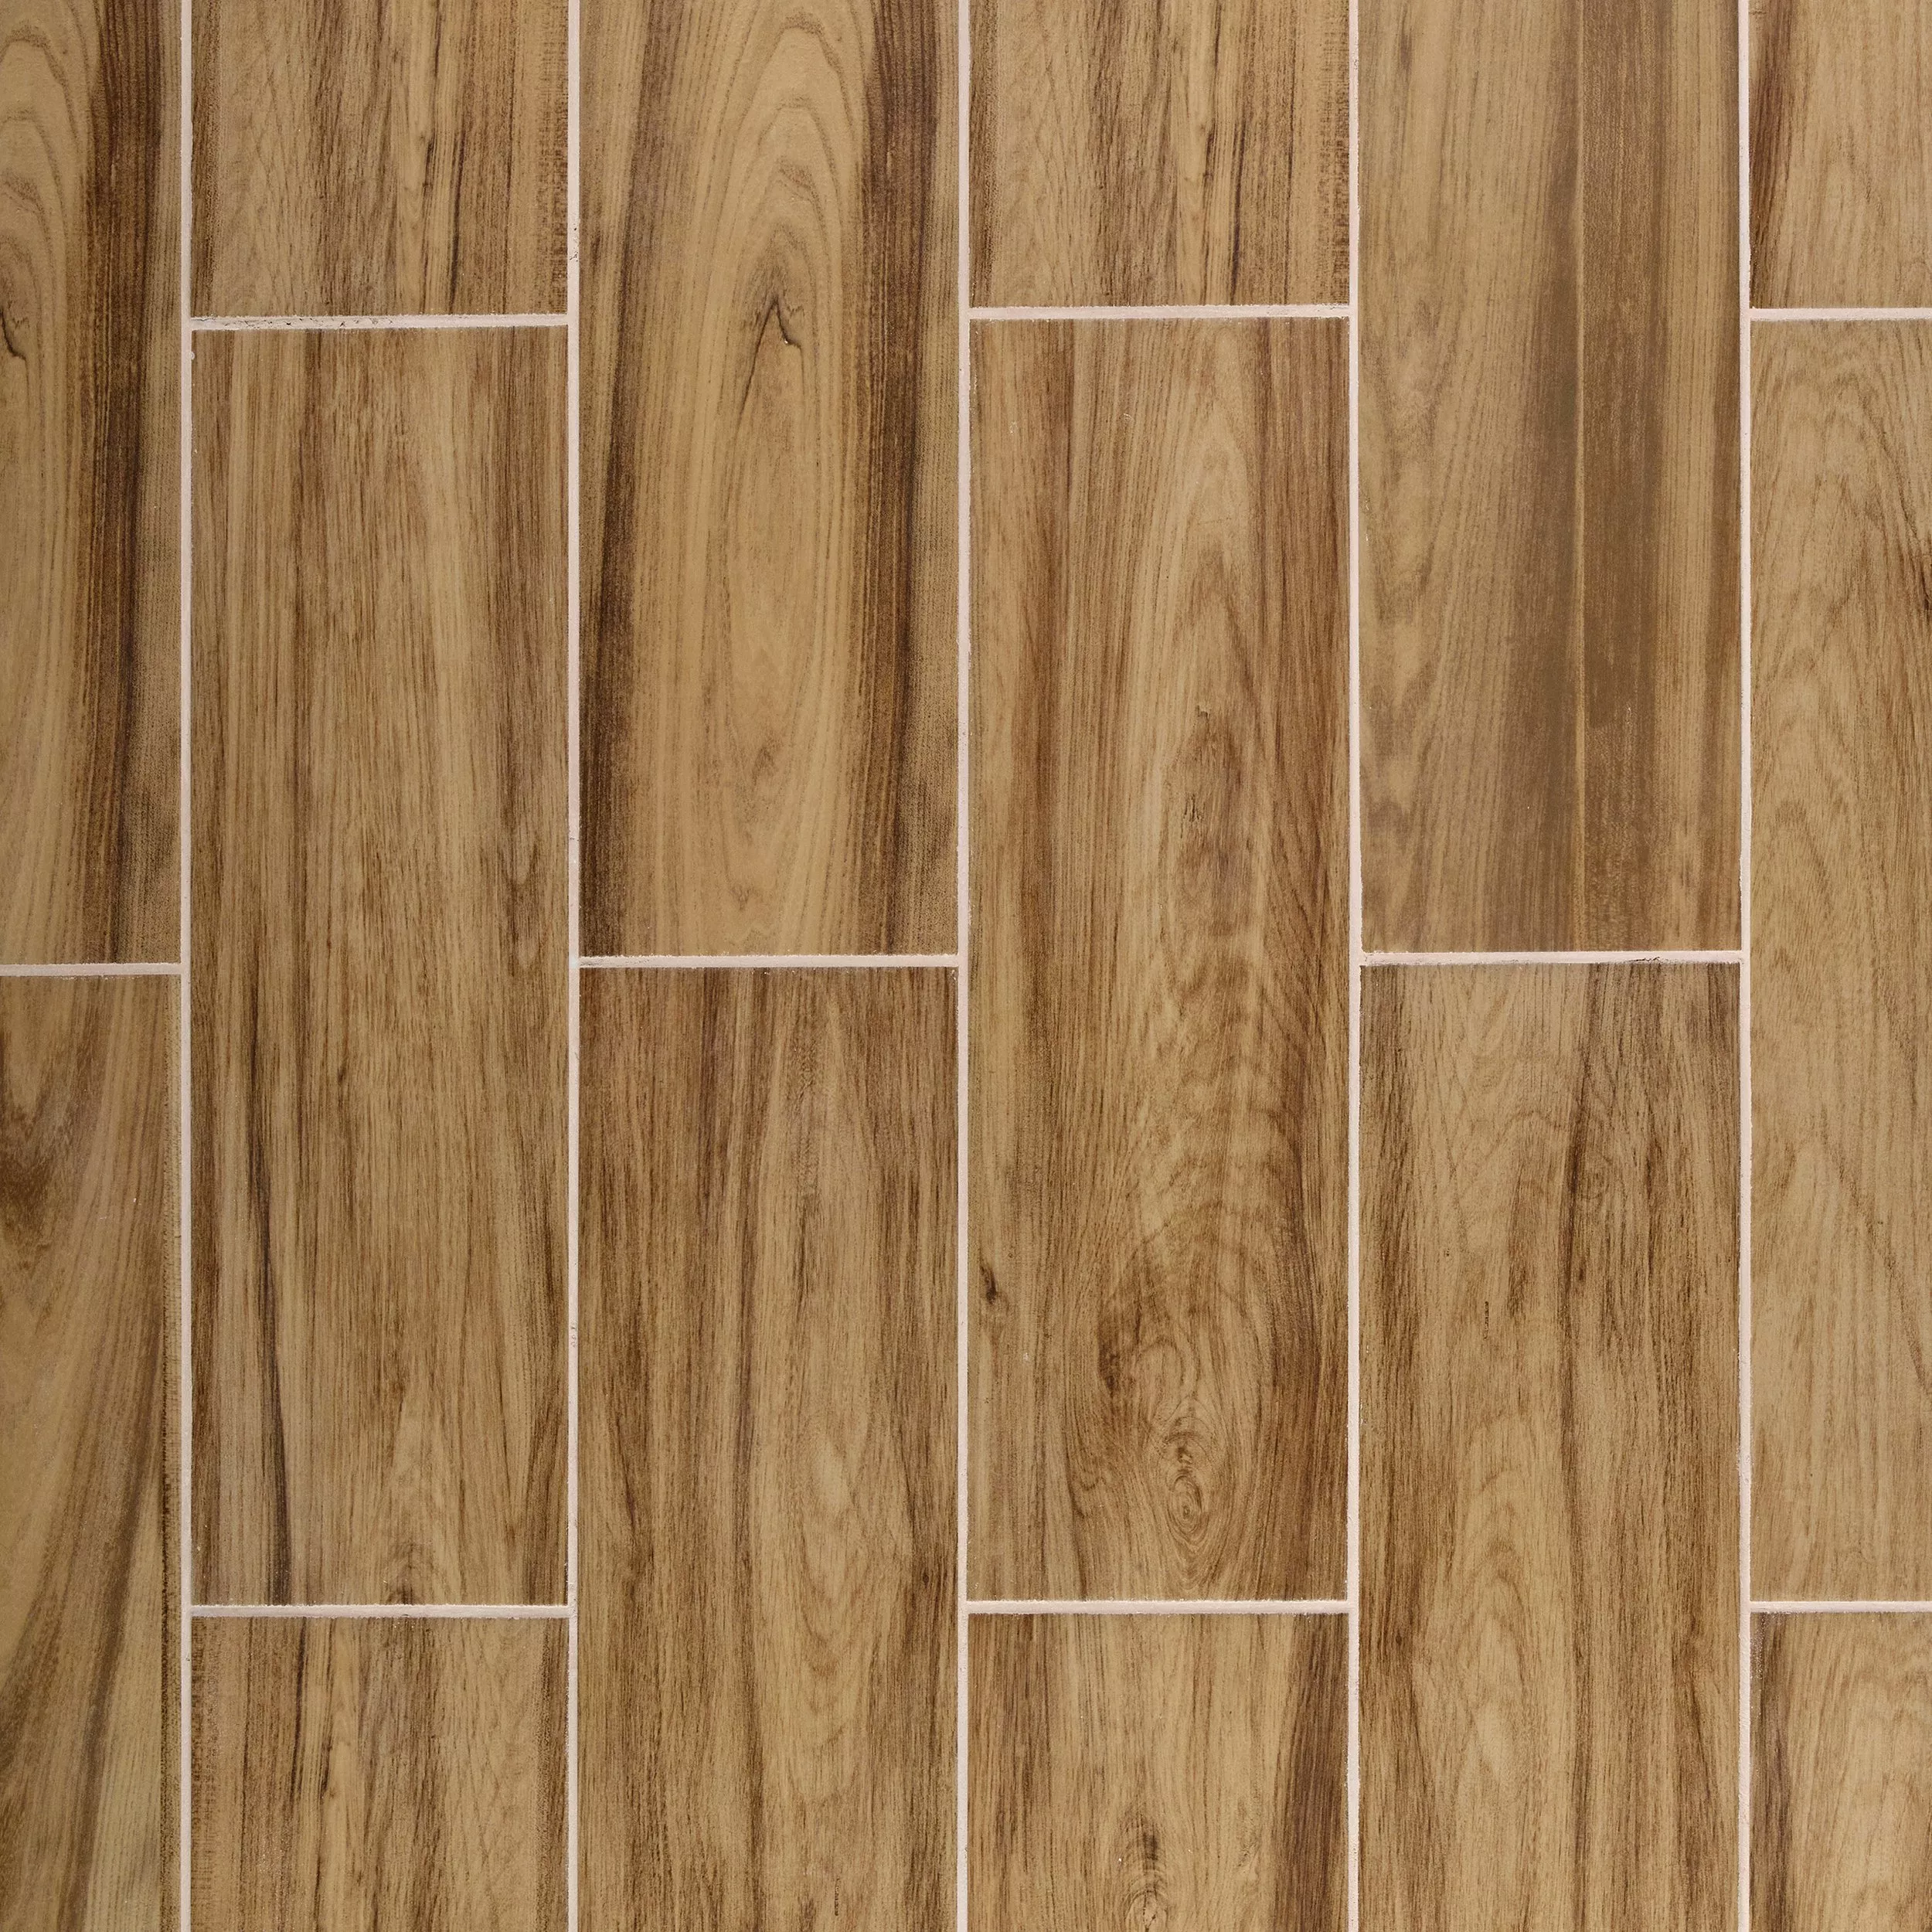 Dayton Natural Wood Plank Ceramic Tile